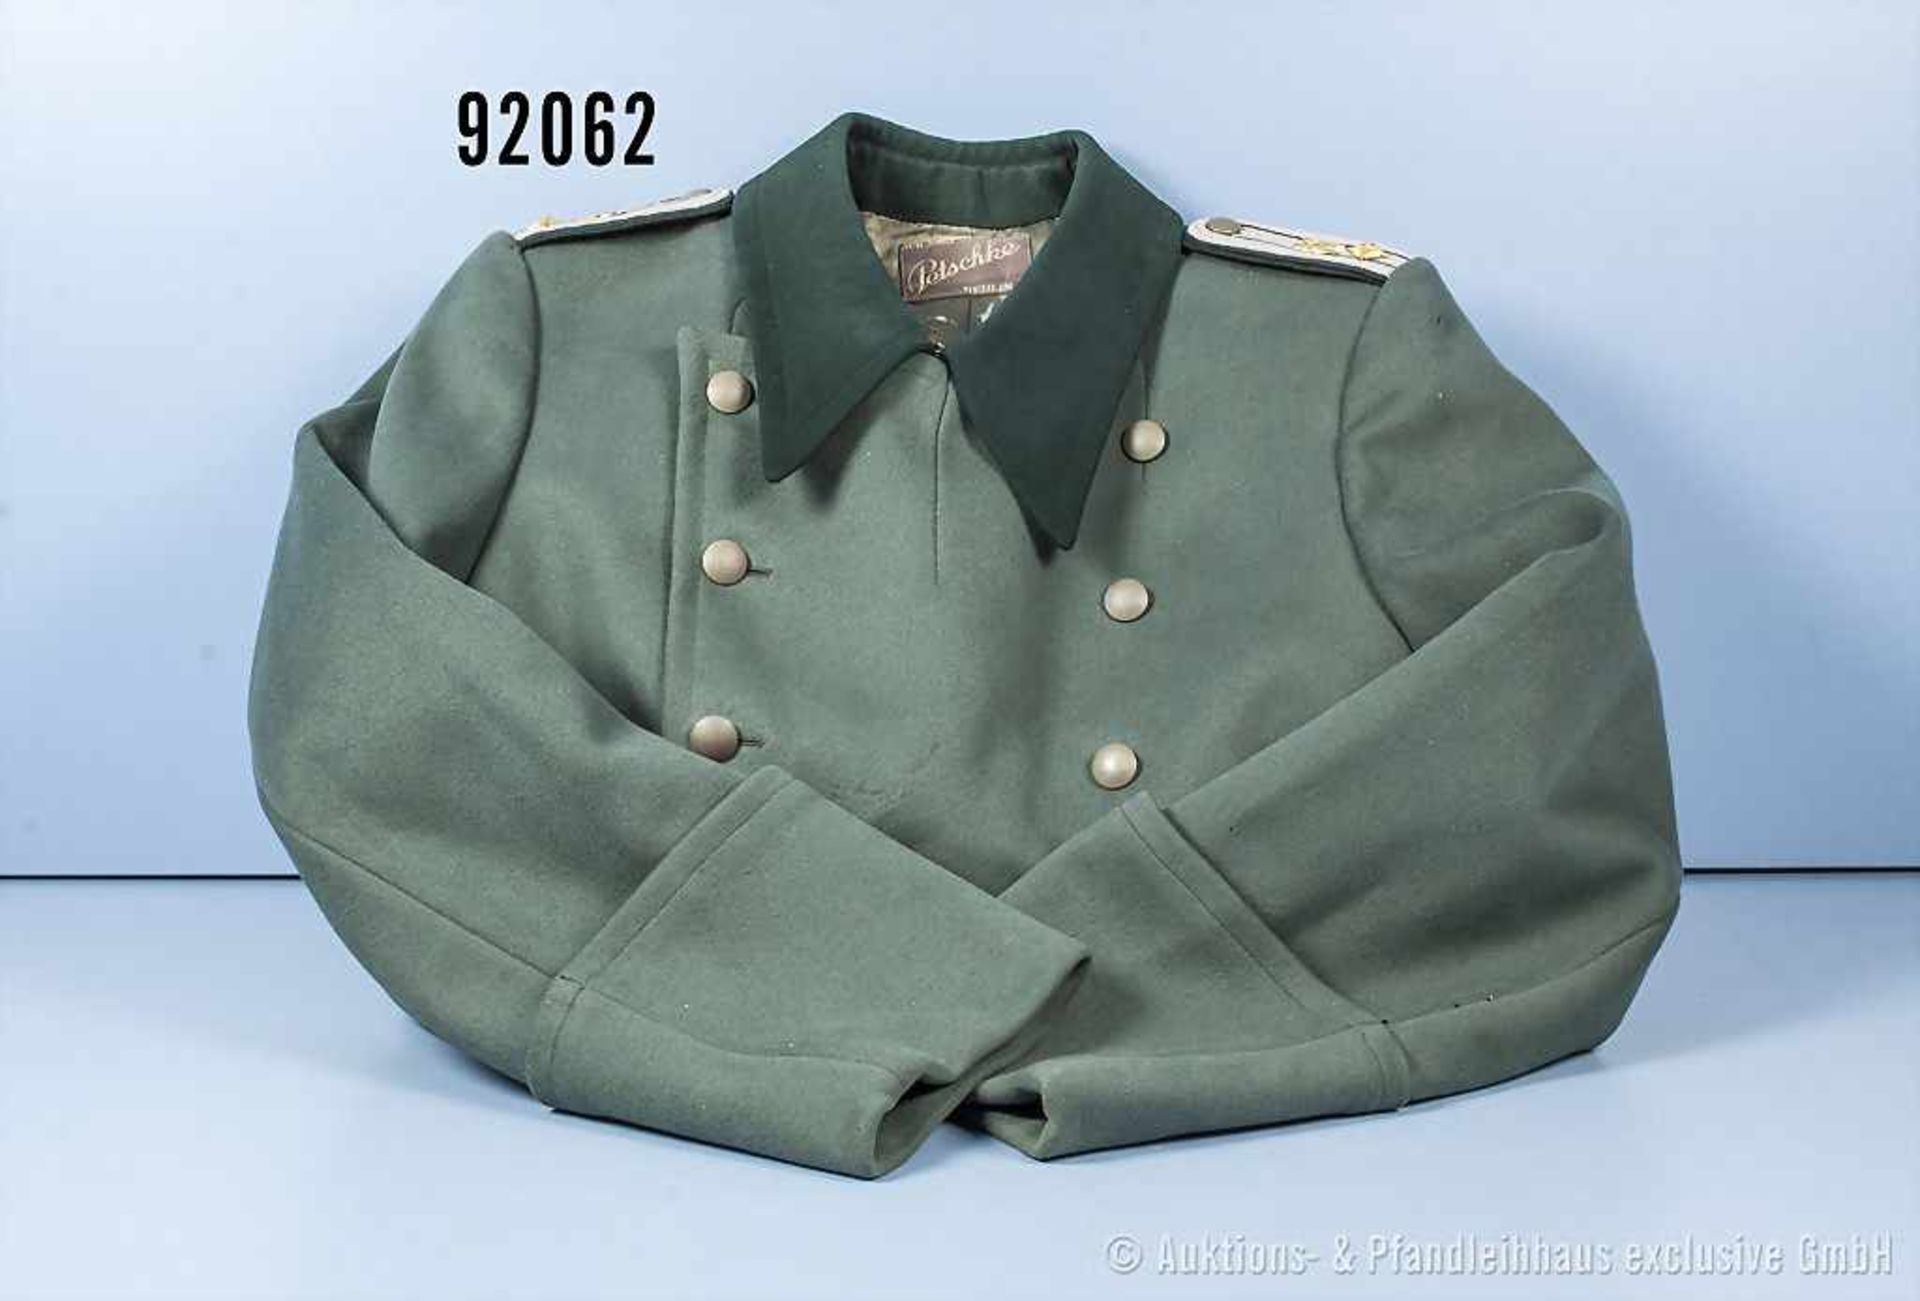 Mantel für Wehrmachtsbeamte, Schulterstücke ergänzt, Durchgriff für die Seitenwaffe,